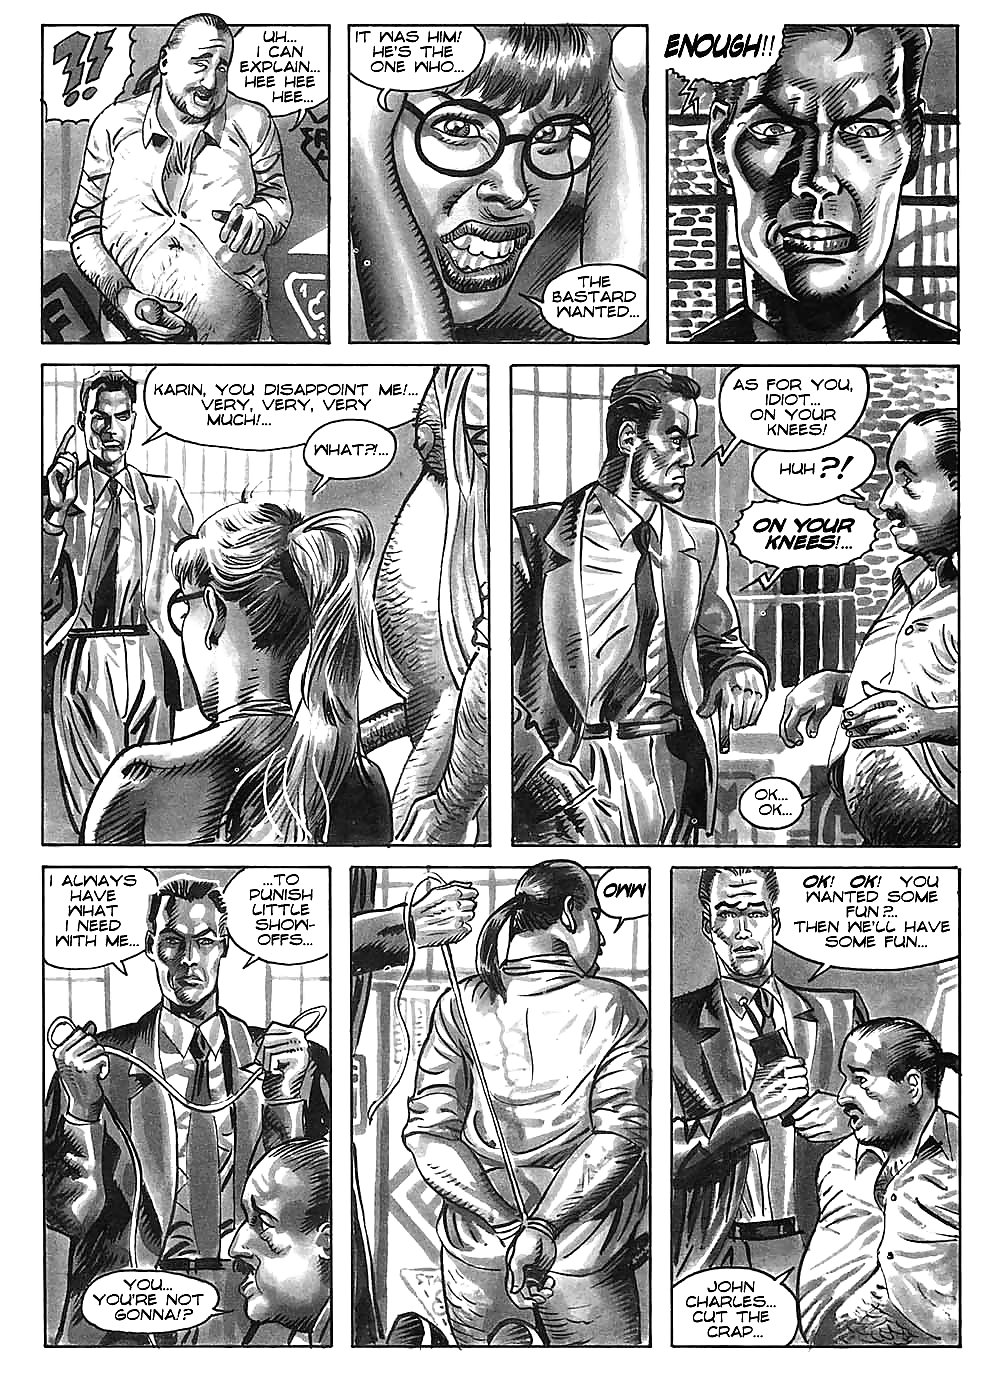 Hot comics 52 #19539756